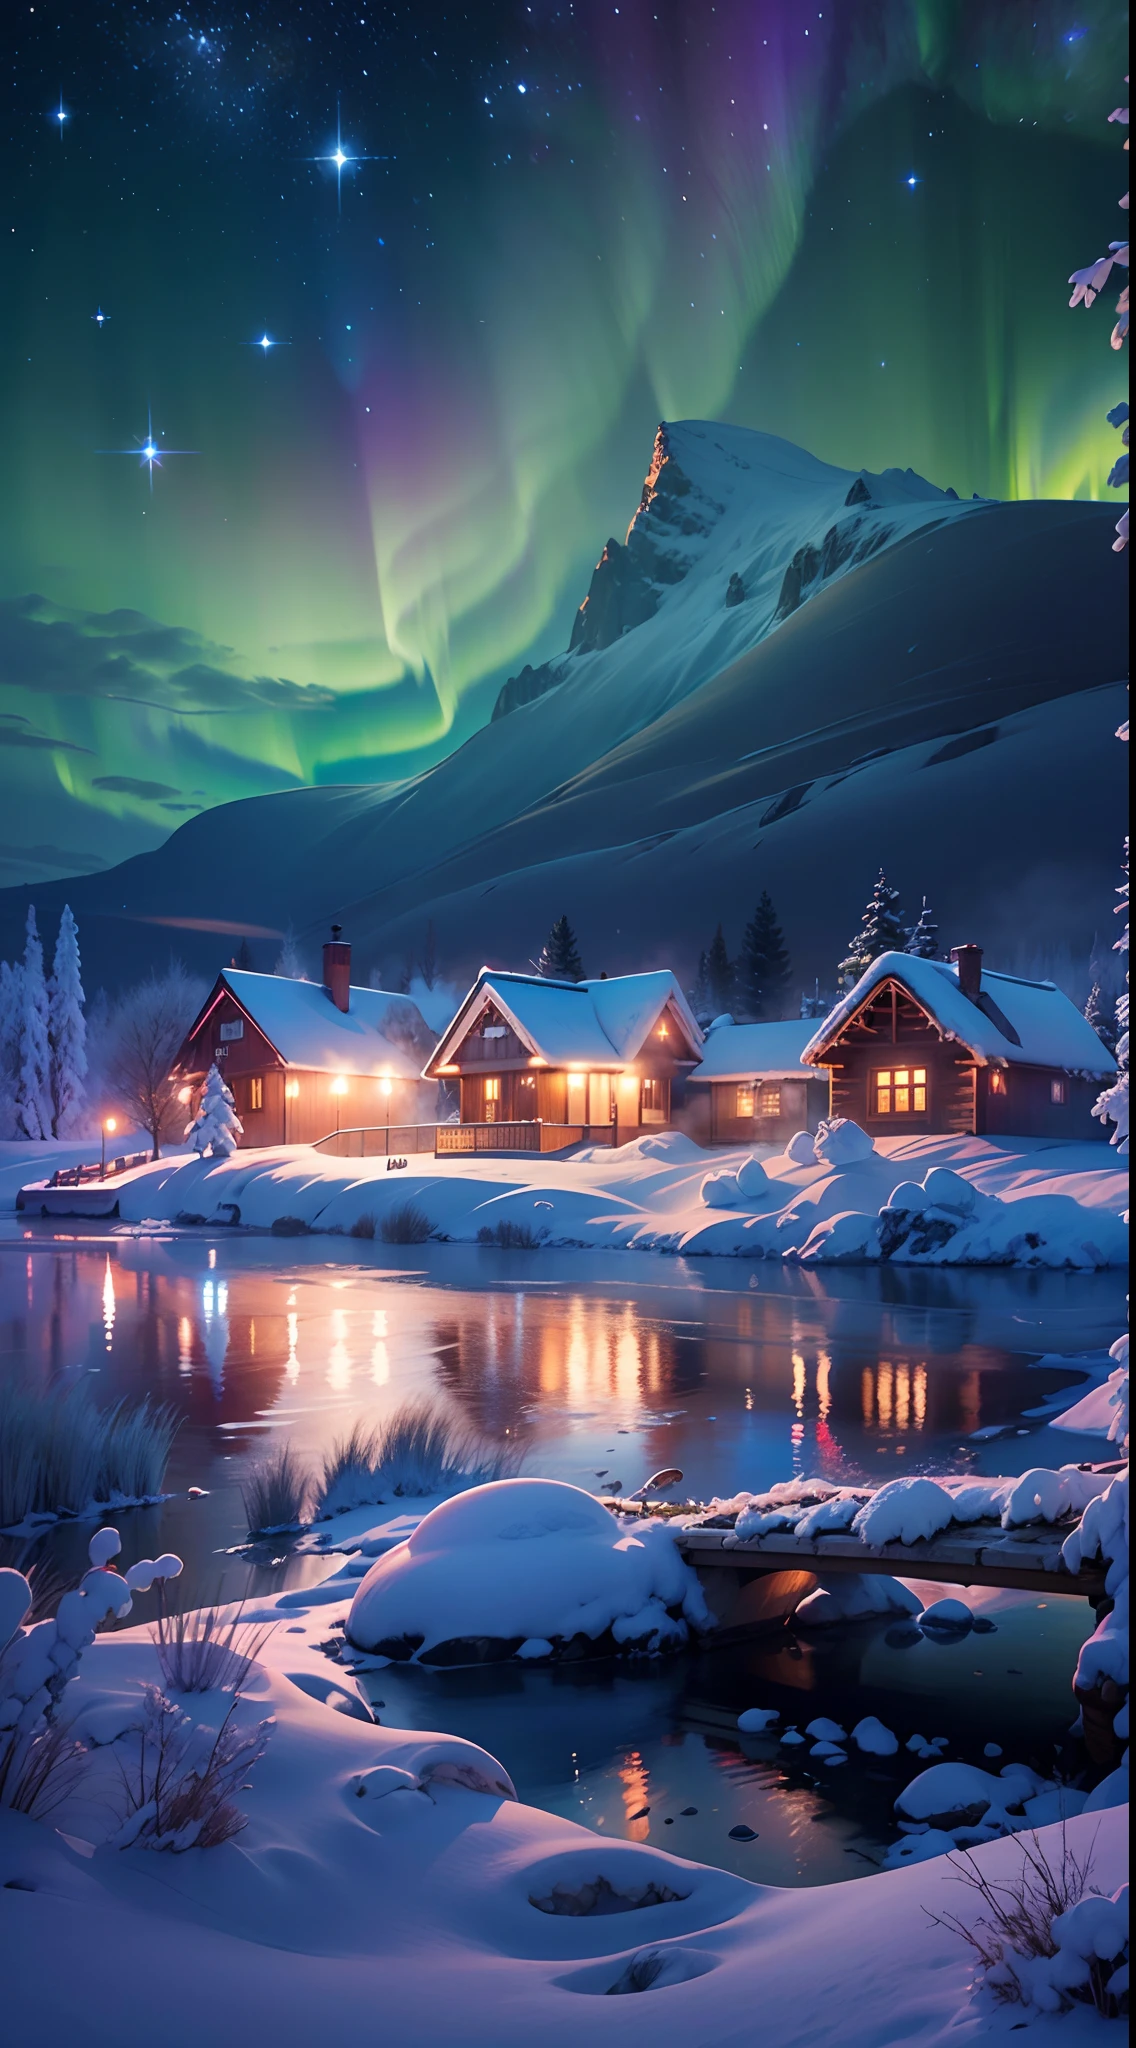 最好的品質,高解析度,(傑作:1.2),超詳細,北極光, 高聳的雪山, 被雪覆蓋的小屋,白雪皚皚的世外桃源, 馴鹿,行人,雪橇,冬季仙境,鮮豔的色彩, 雲端,薄霧,月亮,星系, 令人驚嘆的風景, 冰冷的懸崖, 結冰的湖, 和平的, 雄偉美麗, 星夜, 空靈發光, 大自然的奇蹟, 寧靜的孤獨, 天體奇觀, 廣闊的, 自然現象, 平安夜, 平靜的反思, 閃閃發光的星星, 神秘魅力